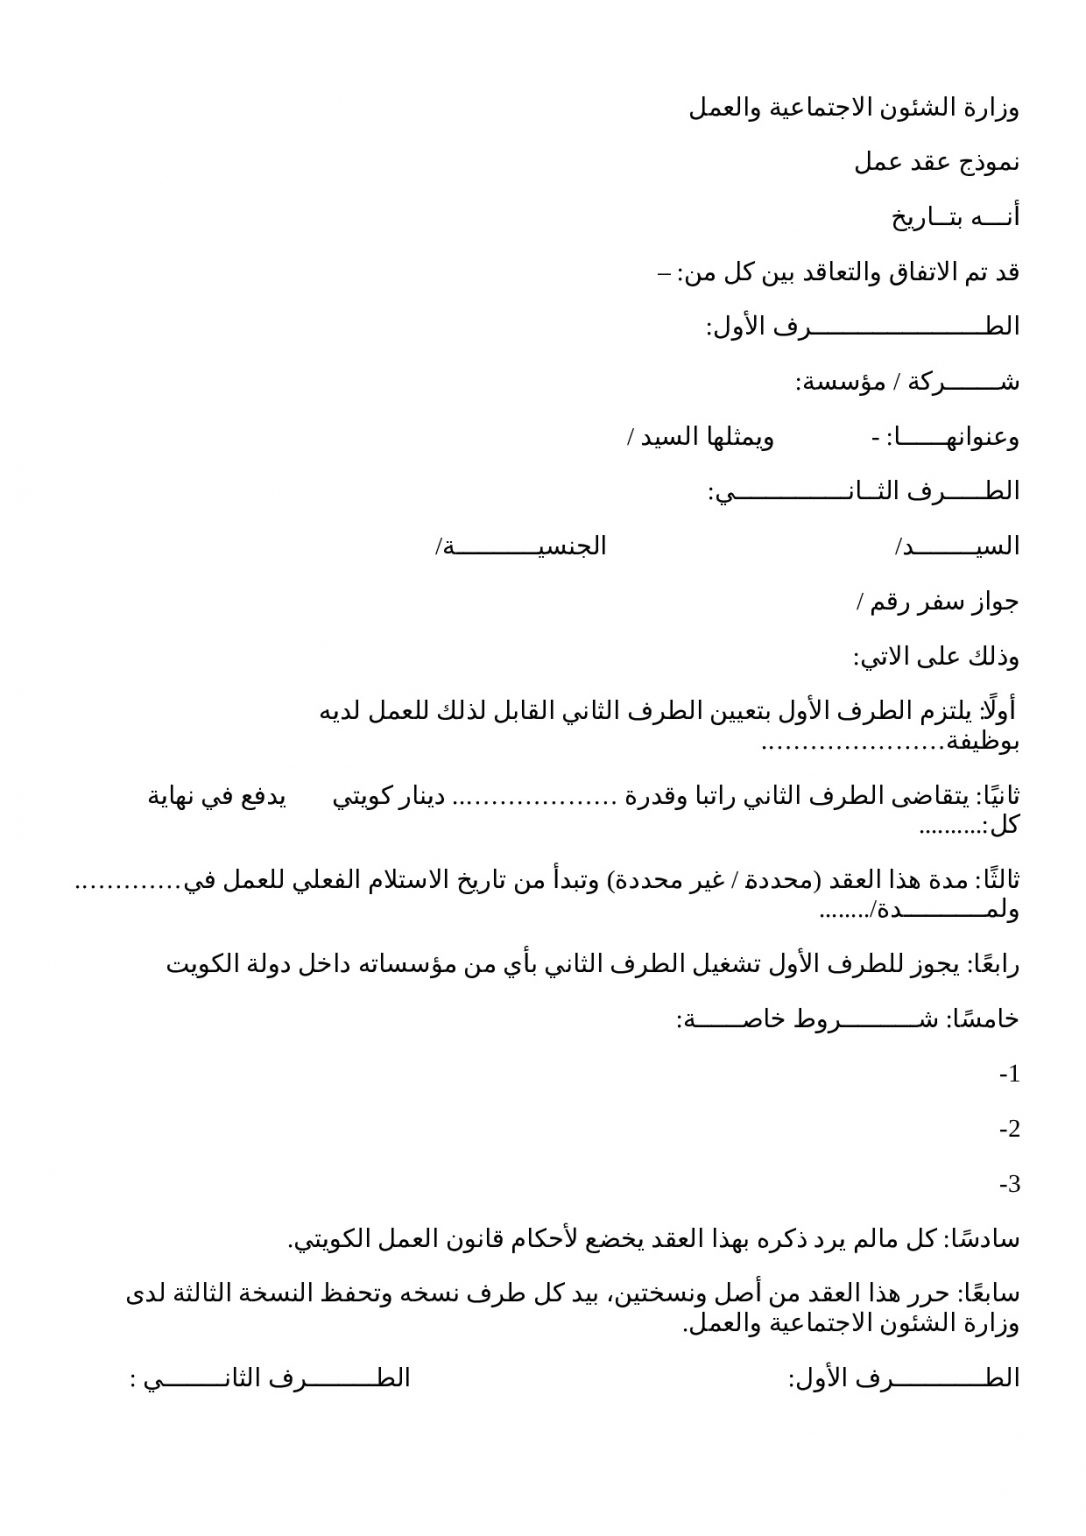 نموذج عقد عمل وزارة الشئون الاجتماعية الكويت 2021 جاهز للطباعة ثقفني